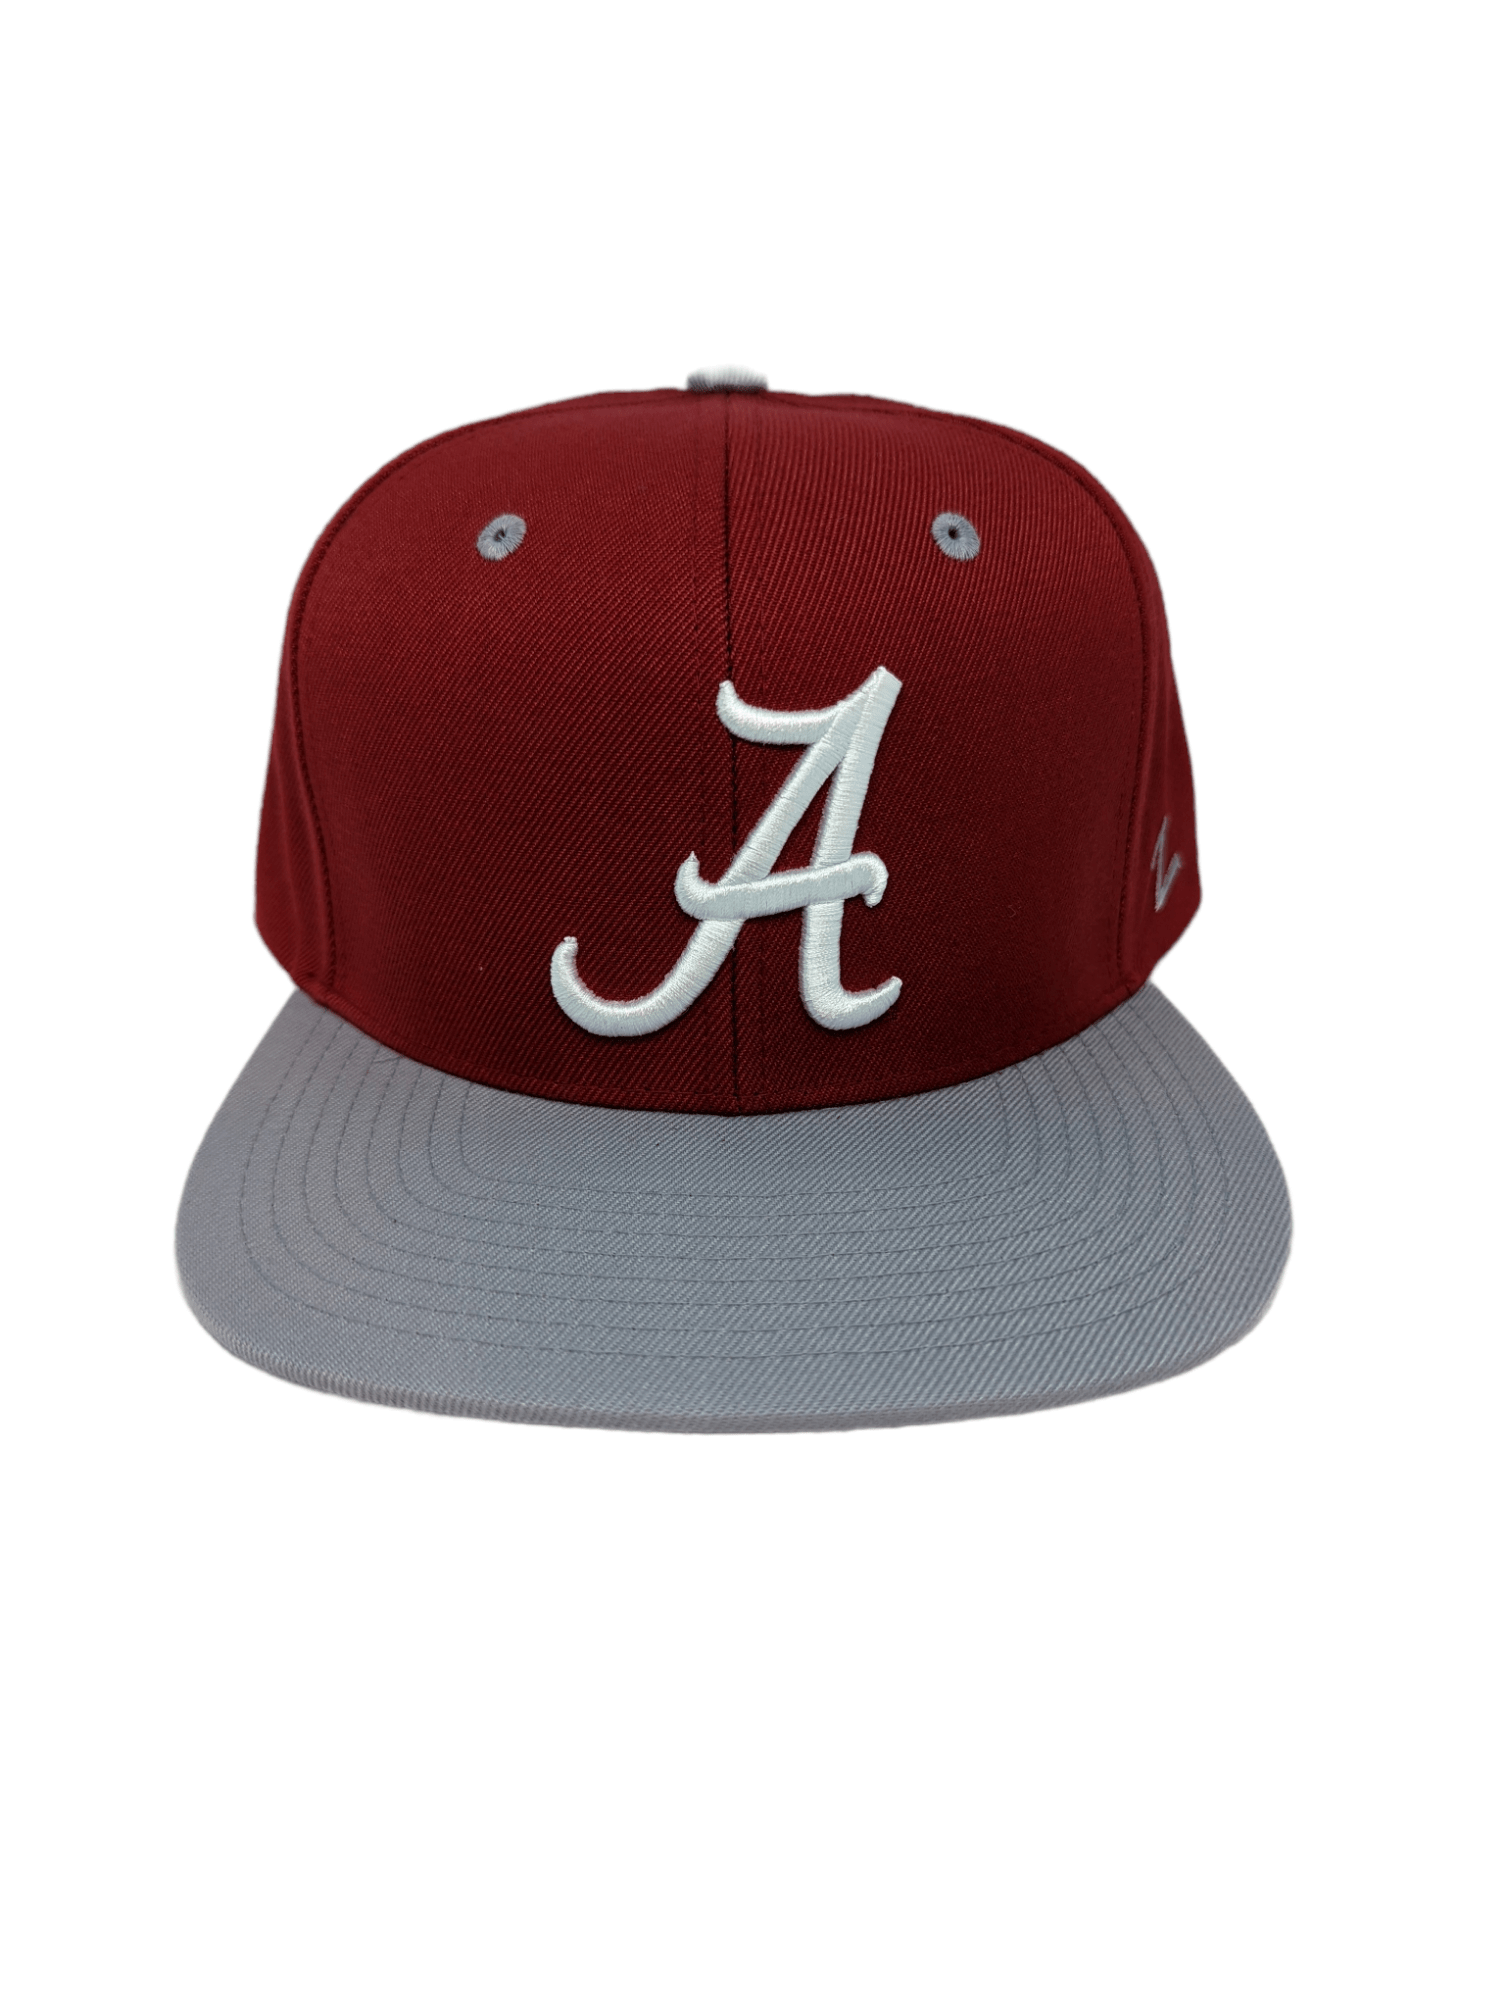 Alabama Z11 Snapback Hat